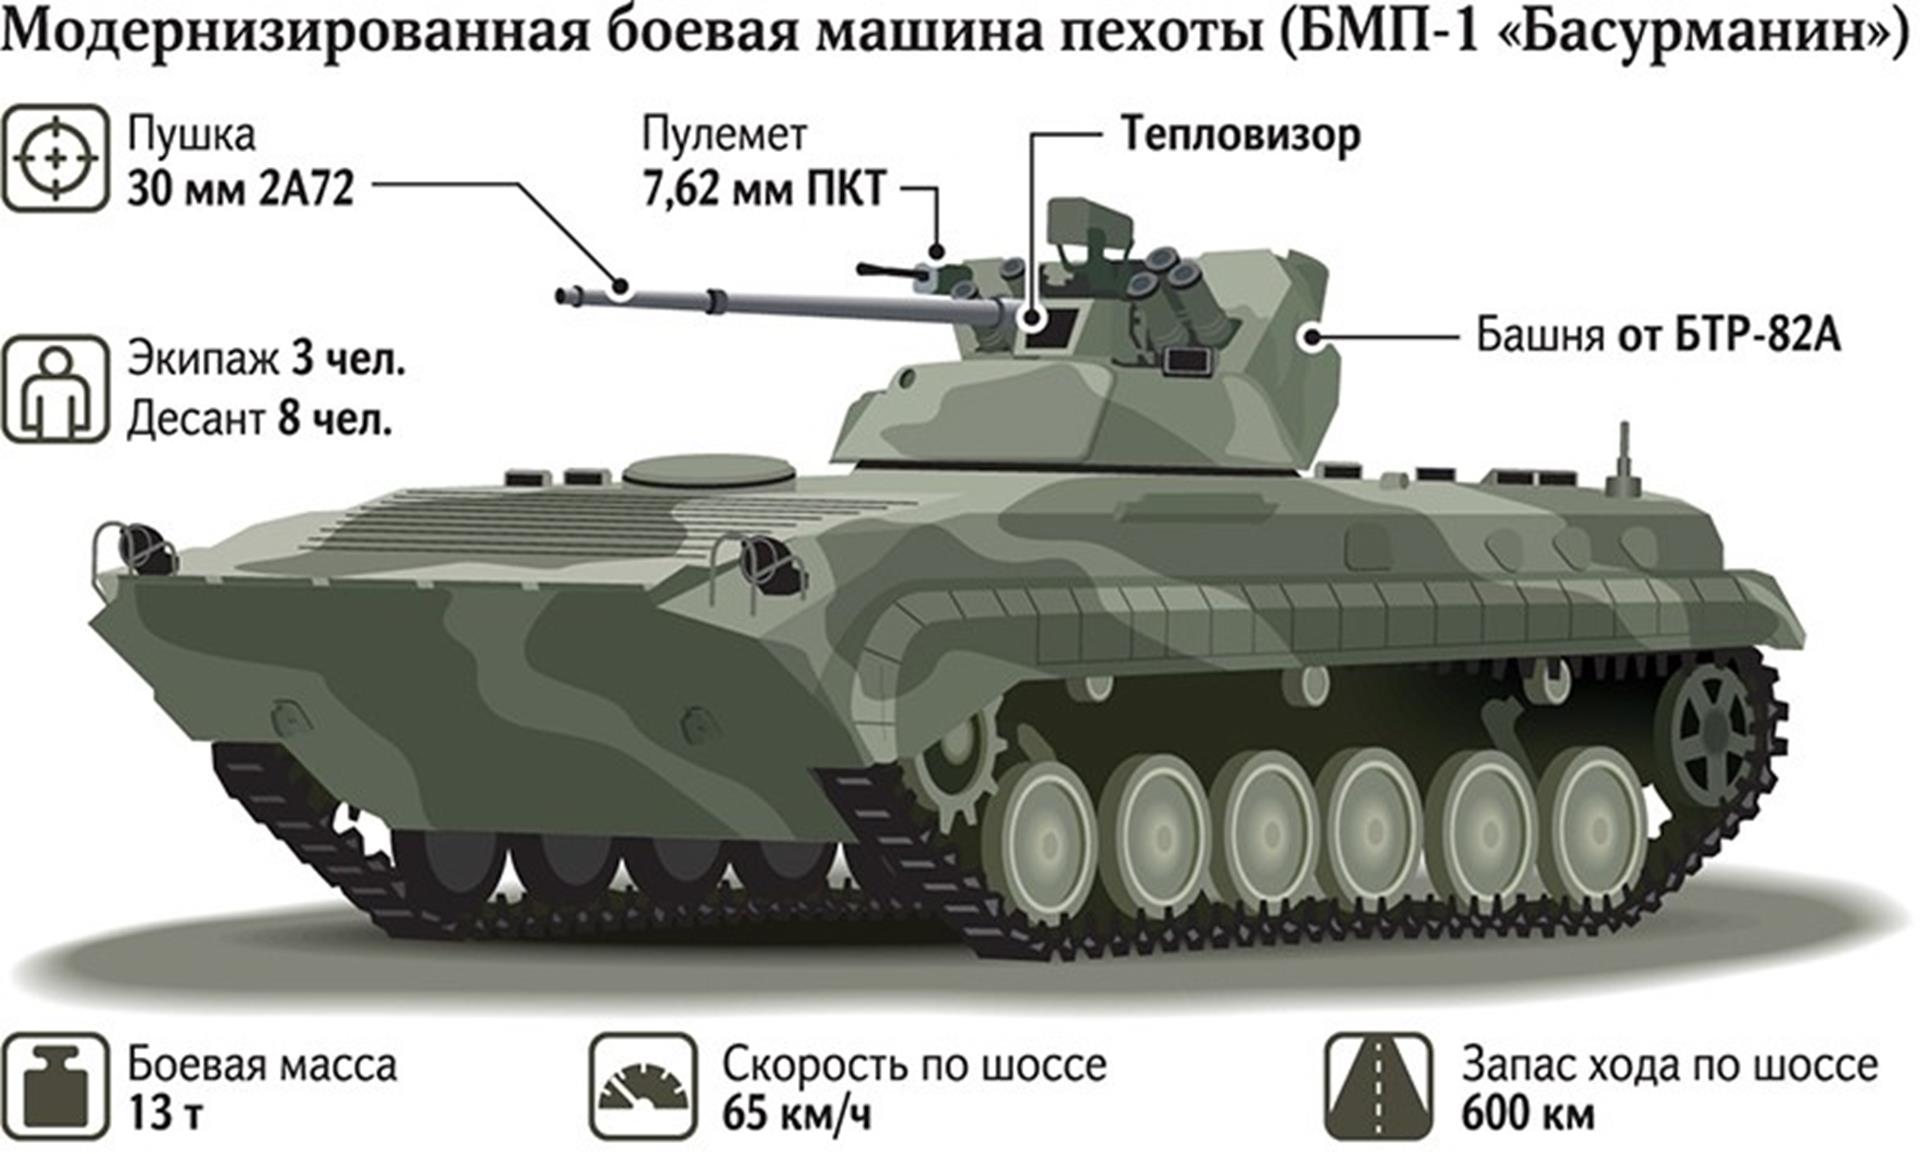 Rosyjskie BMP-1AM Basurmanin, BMP-1AM Basurmanin,